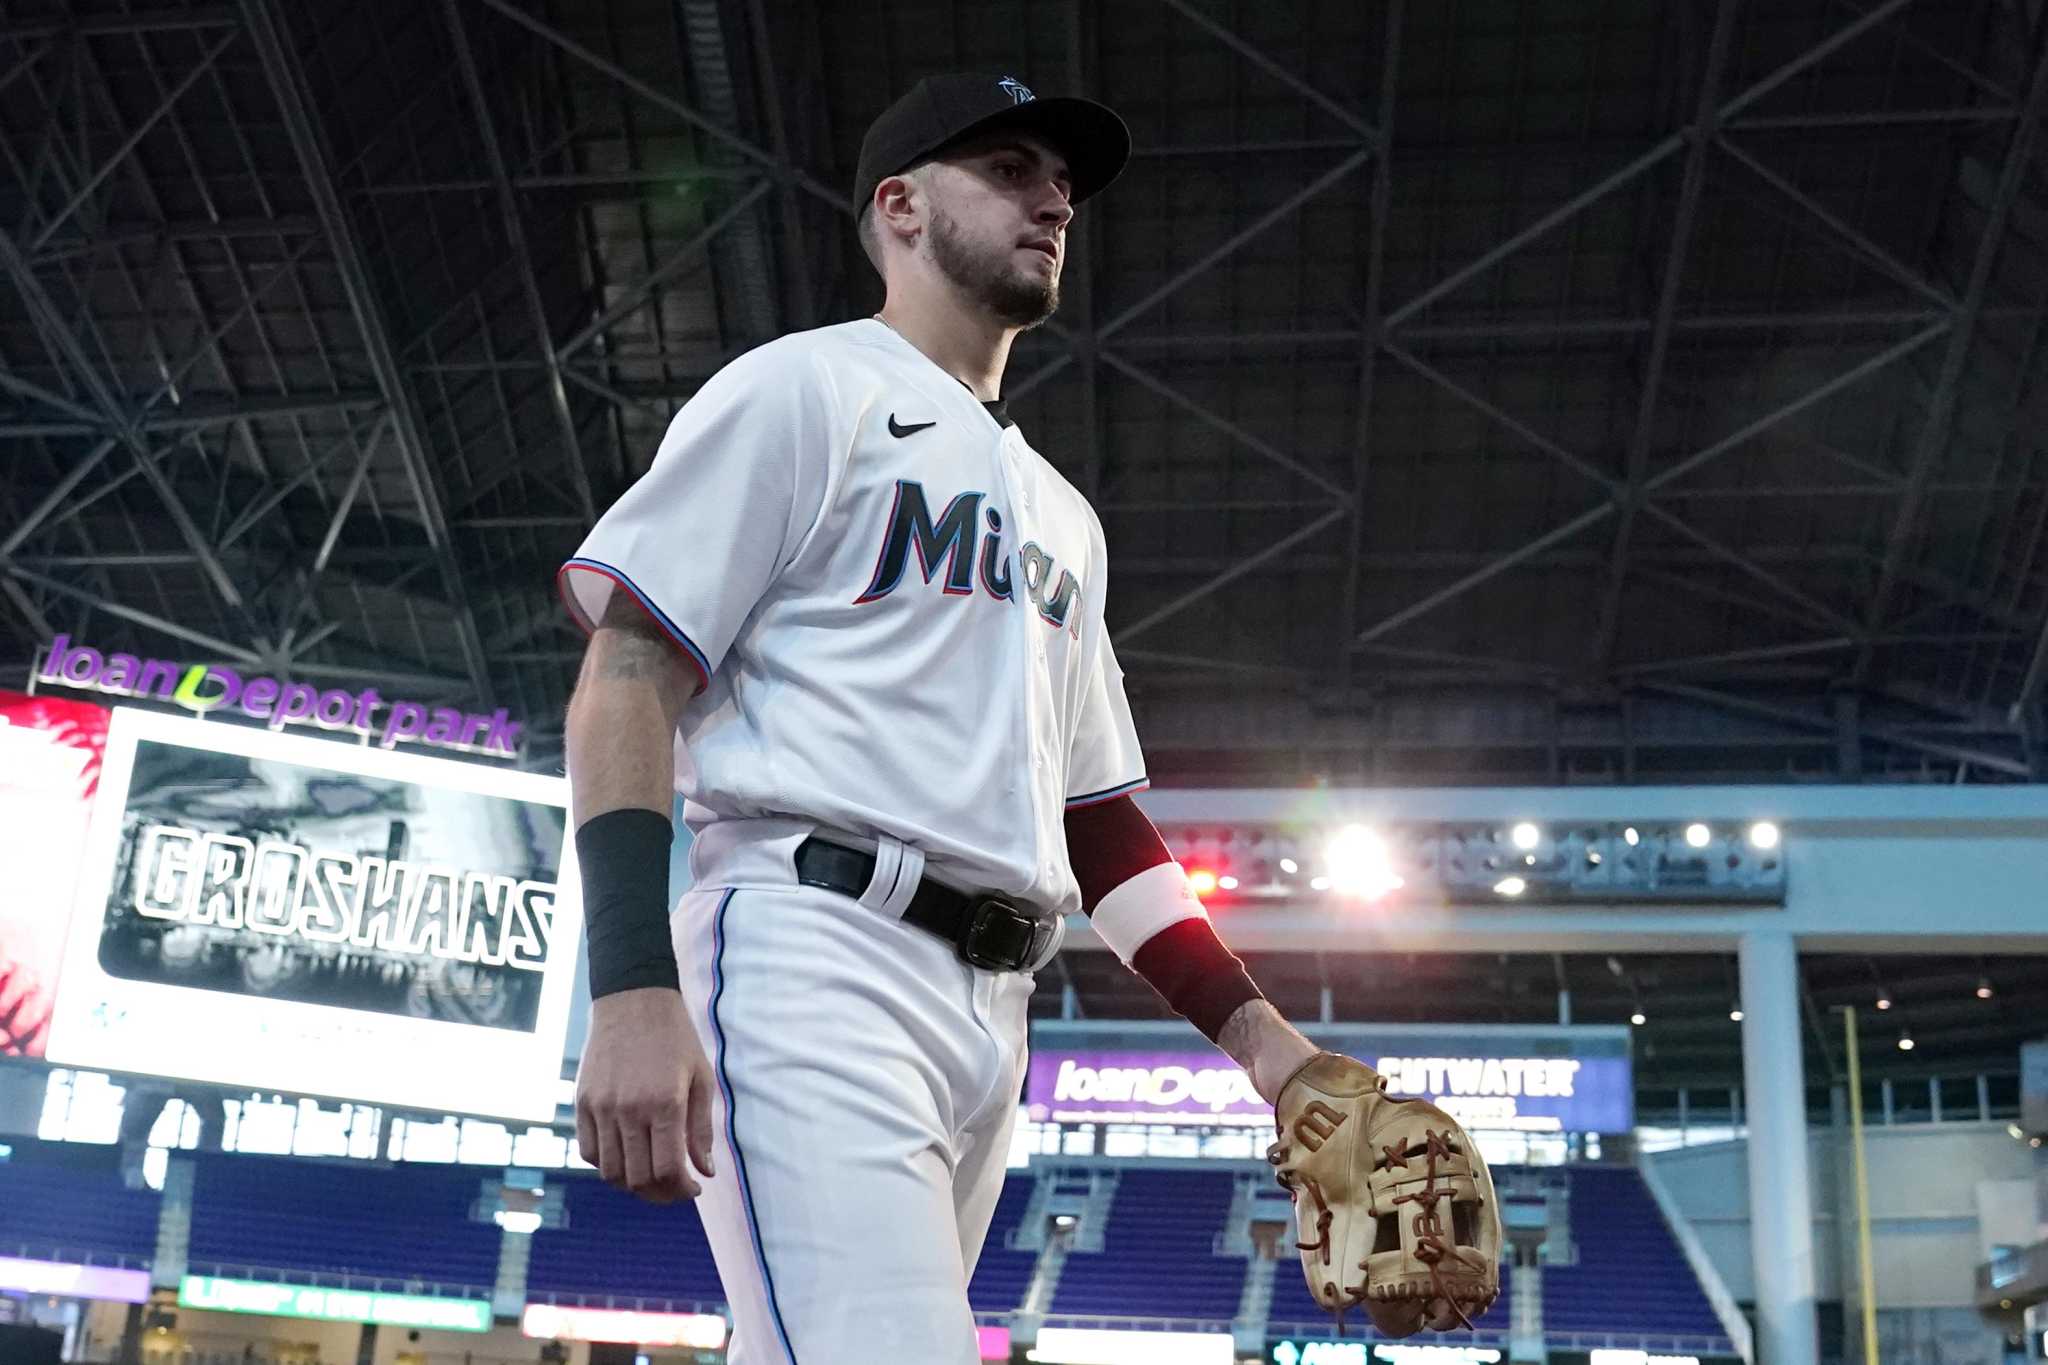 Magnolia's Jordan Groshans starts for Miami in MLB debut